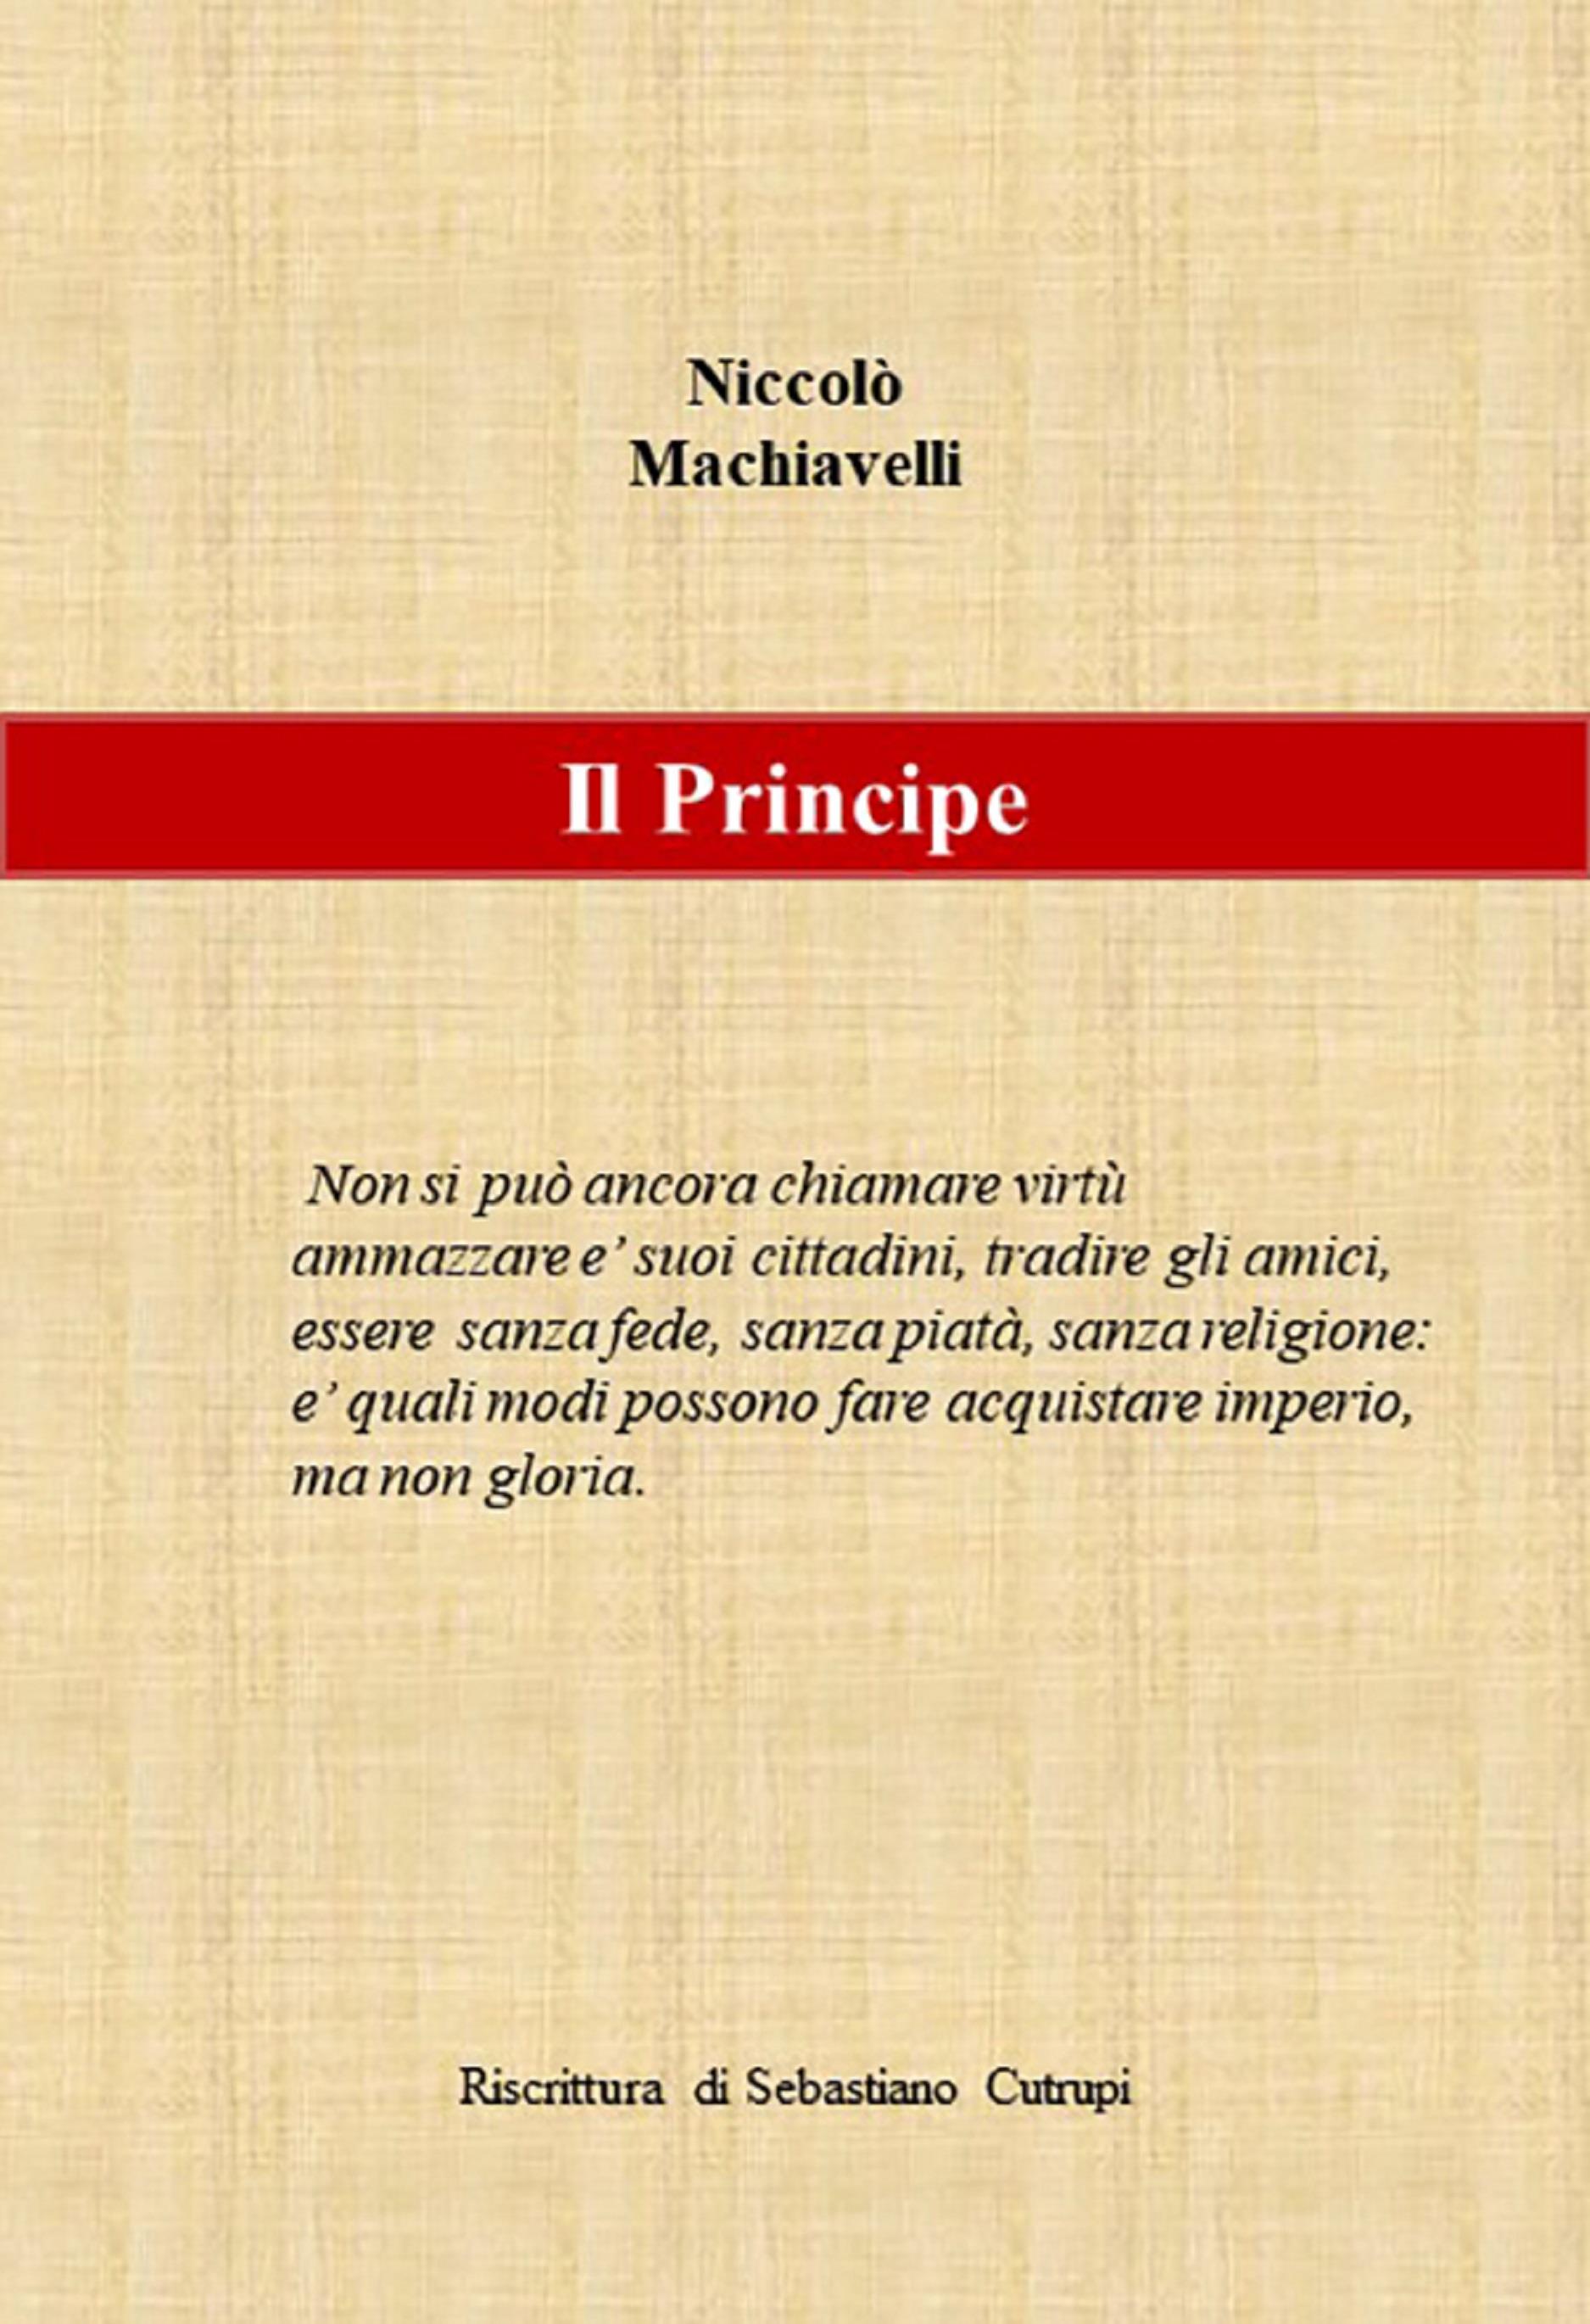 N. Machiavelli - Il Principe - Riscrittura di Sebastiano Cutrupi